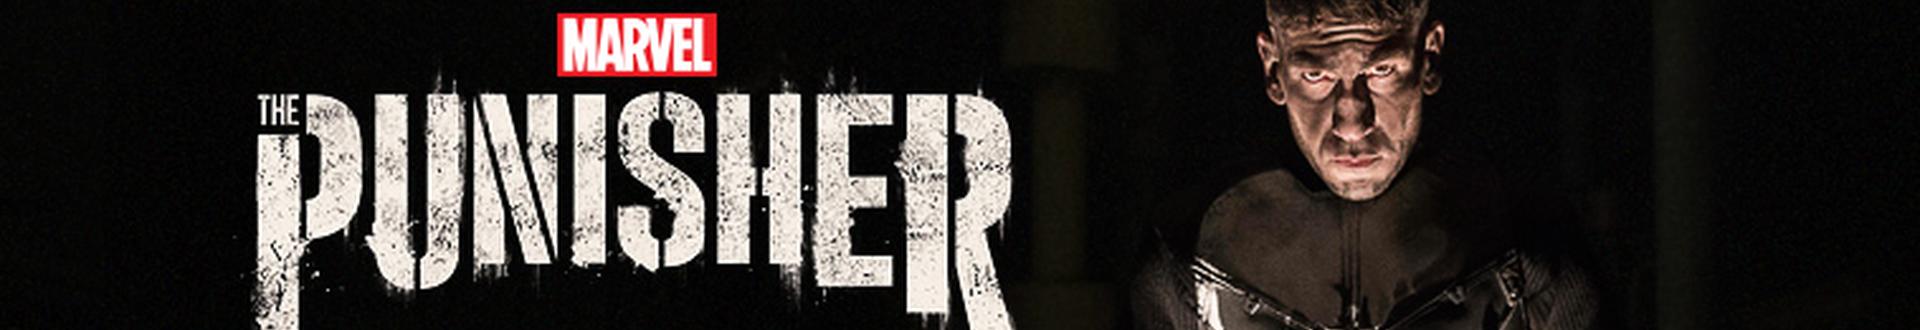 Image illustrative de Marvel's The Punisher